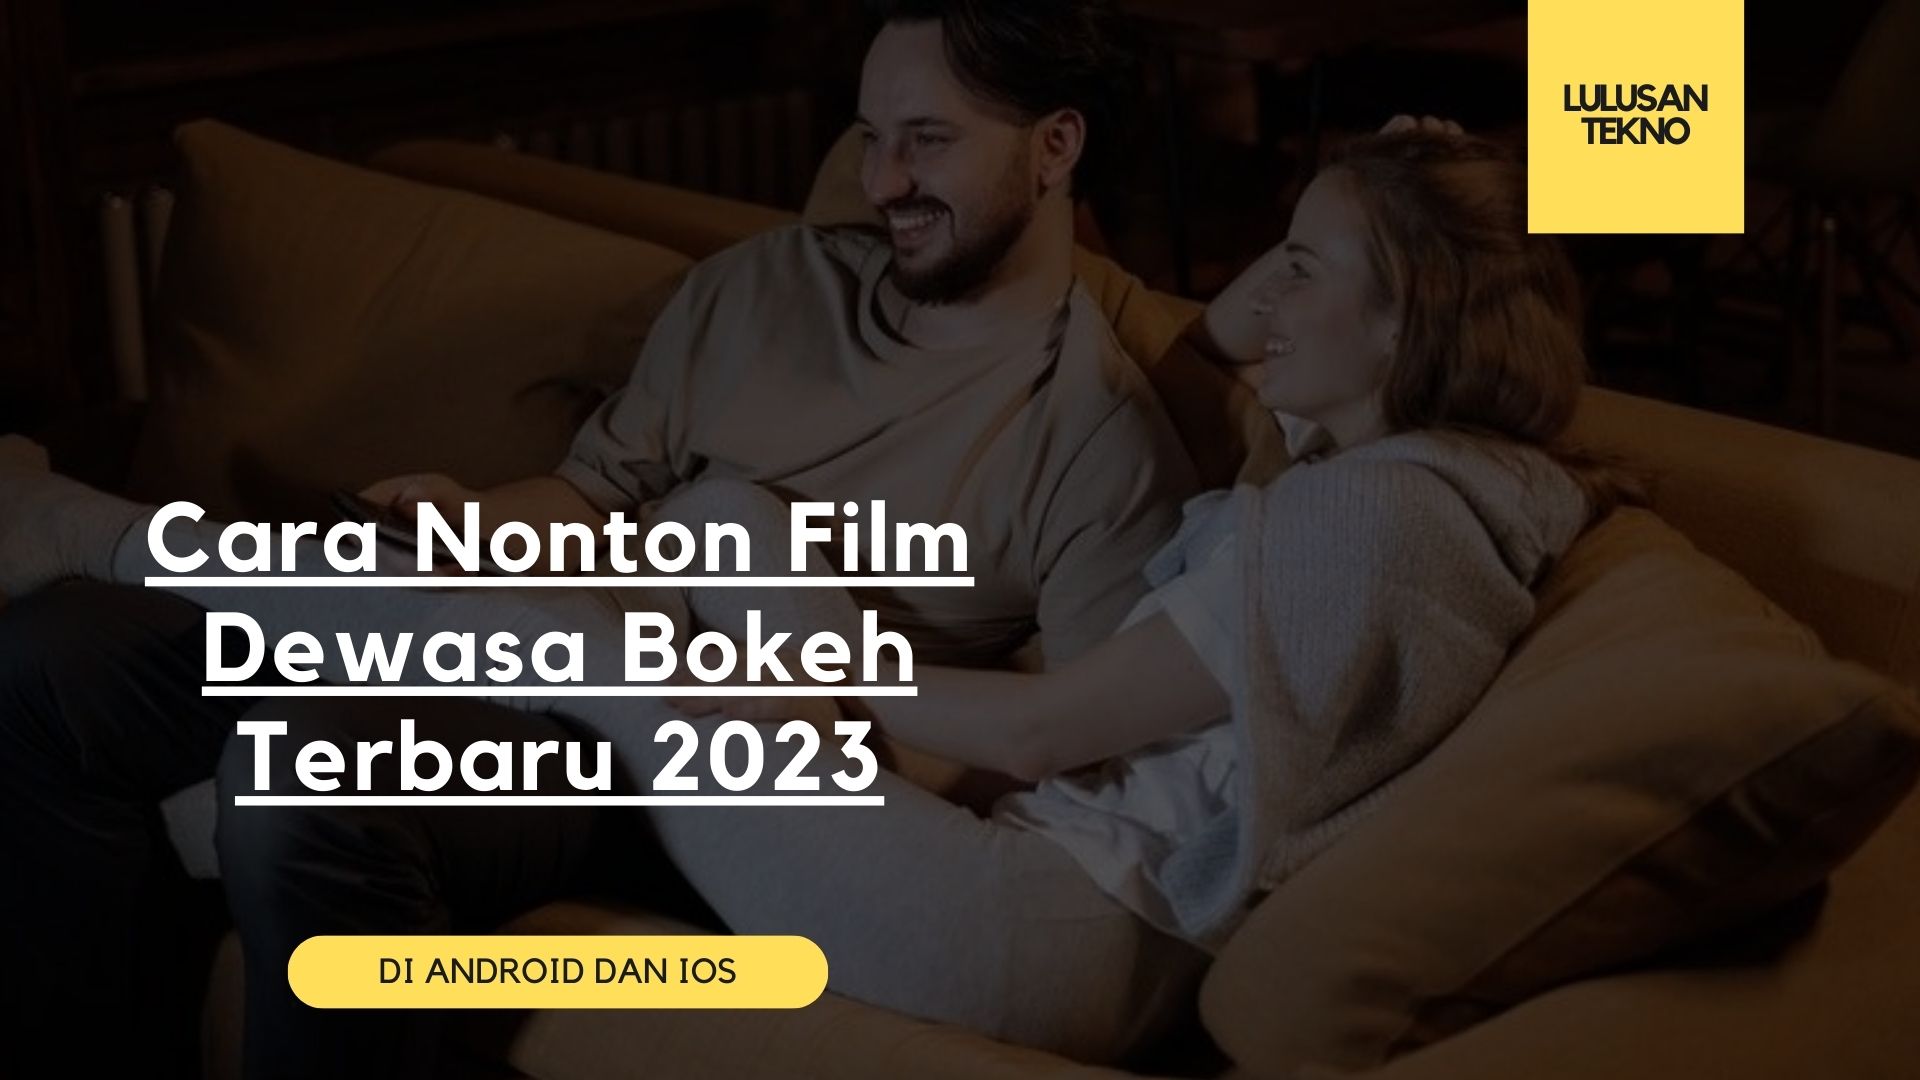 Cara Nonton Film Dewasa Bokeh Terbaru 2023